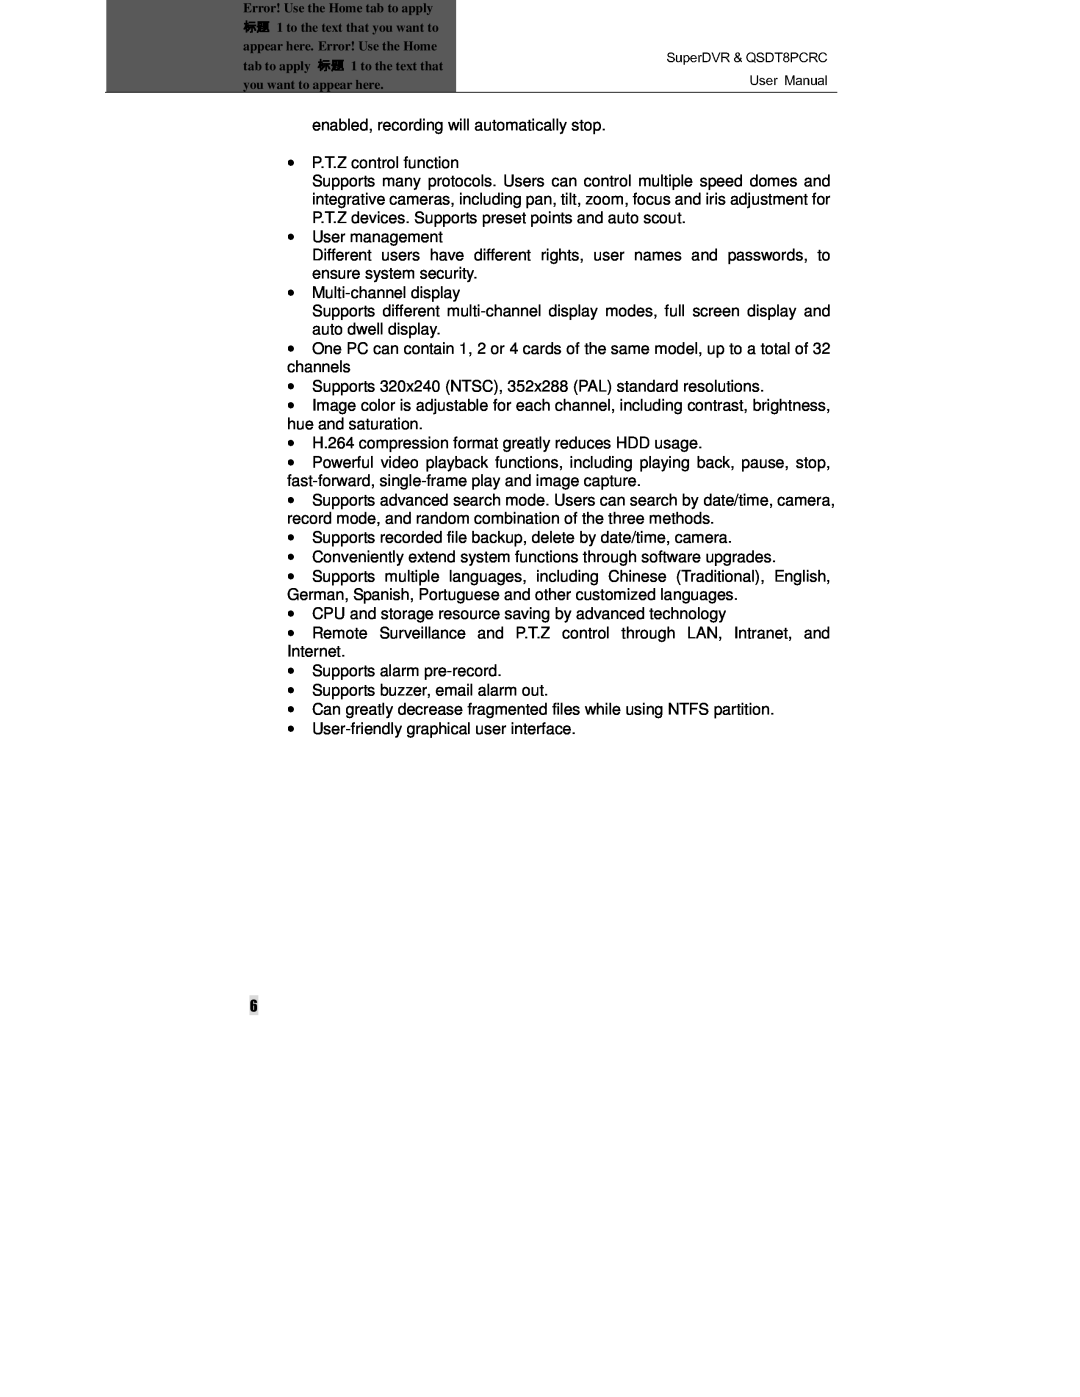 Q-See QSDT8PCRC manual 